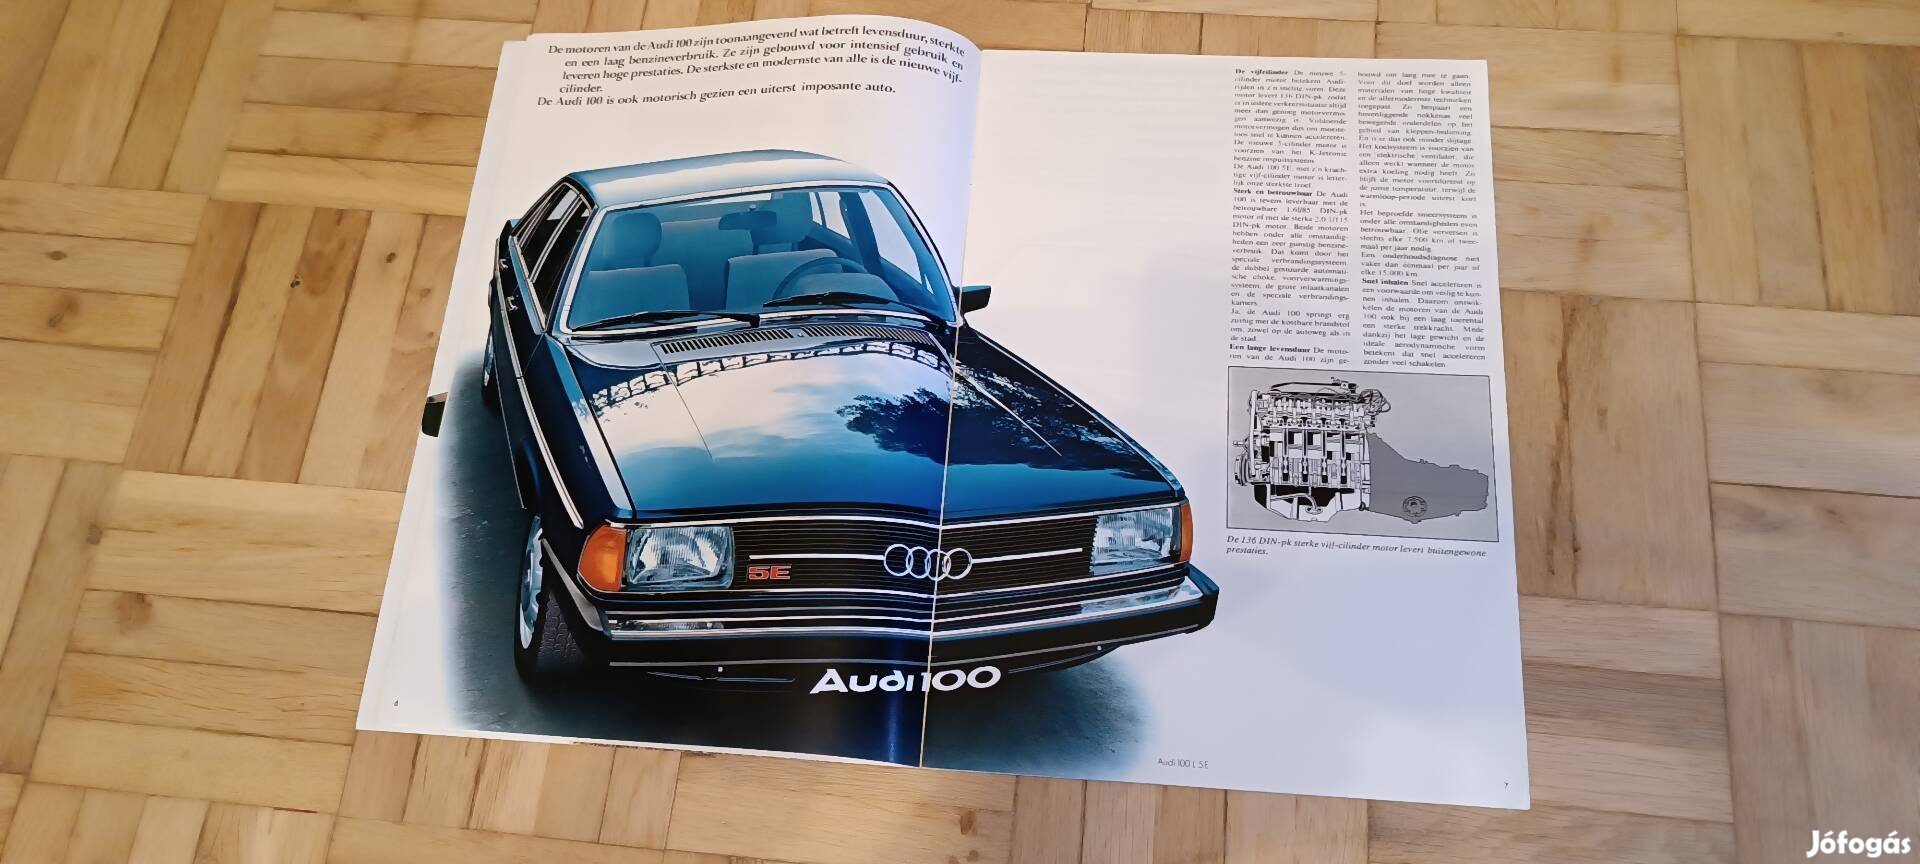 Audi 100 C2 eredeti prospektus típus ismertető leírás 